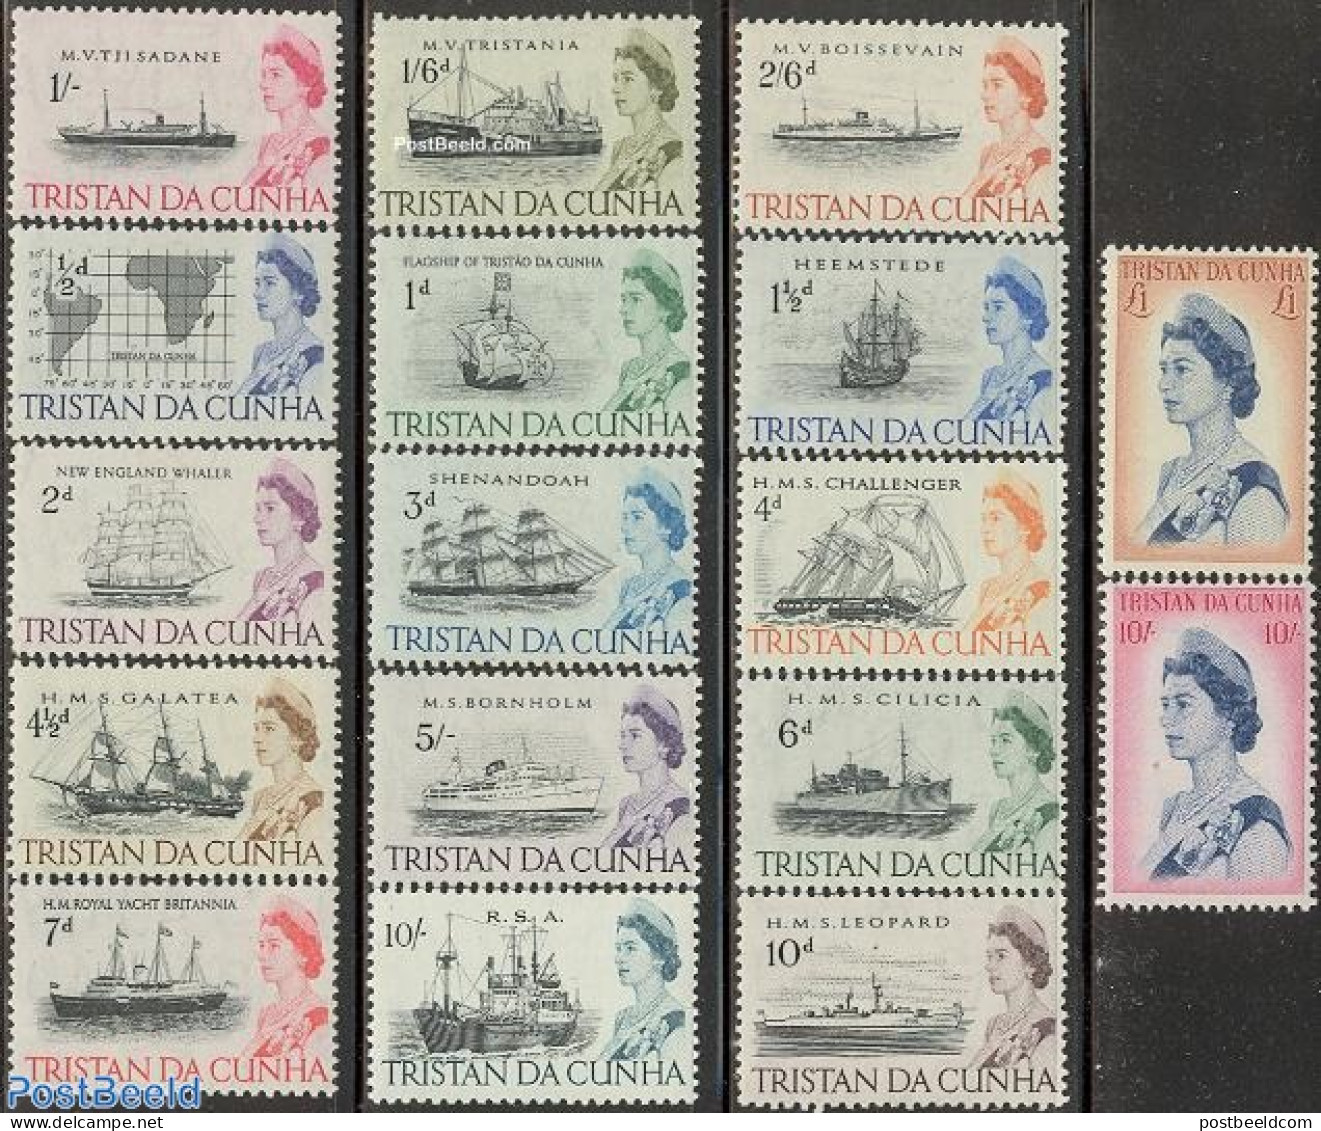 Tristan Da Cunha 1965 Definitives 17v, Mint NH, Transport - Ships And Boats - Ships